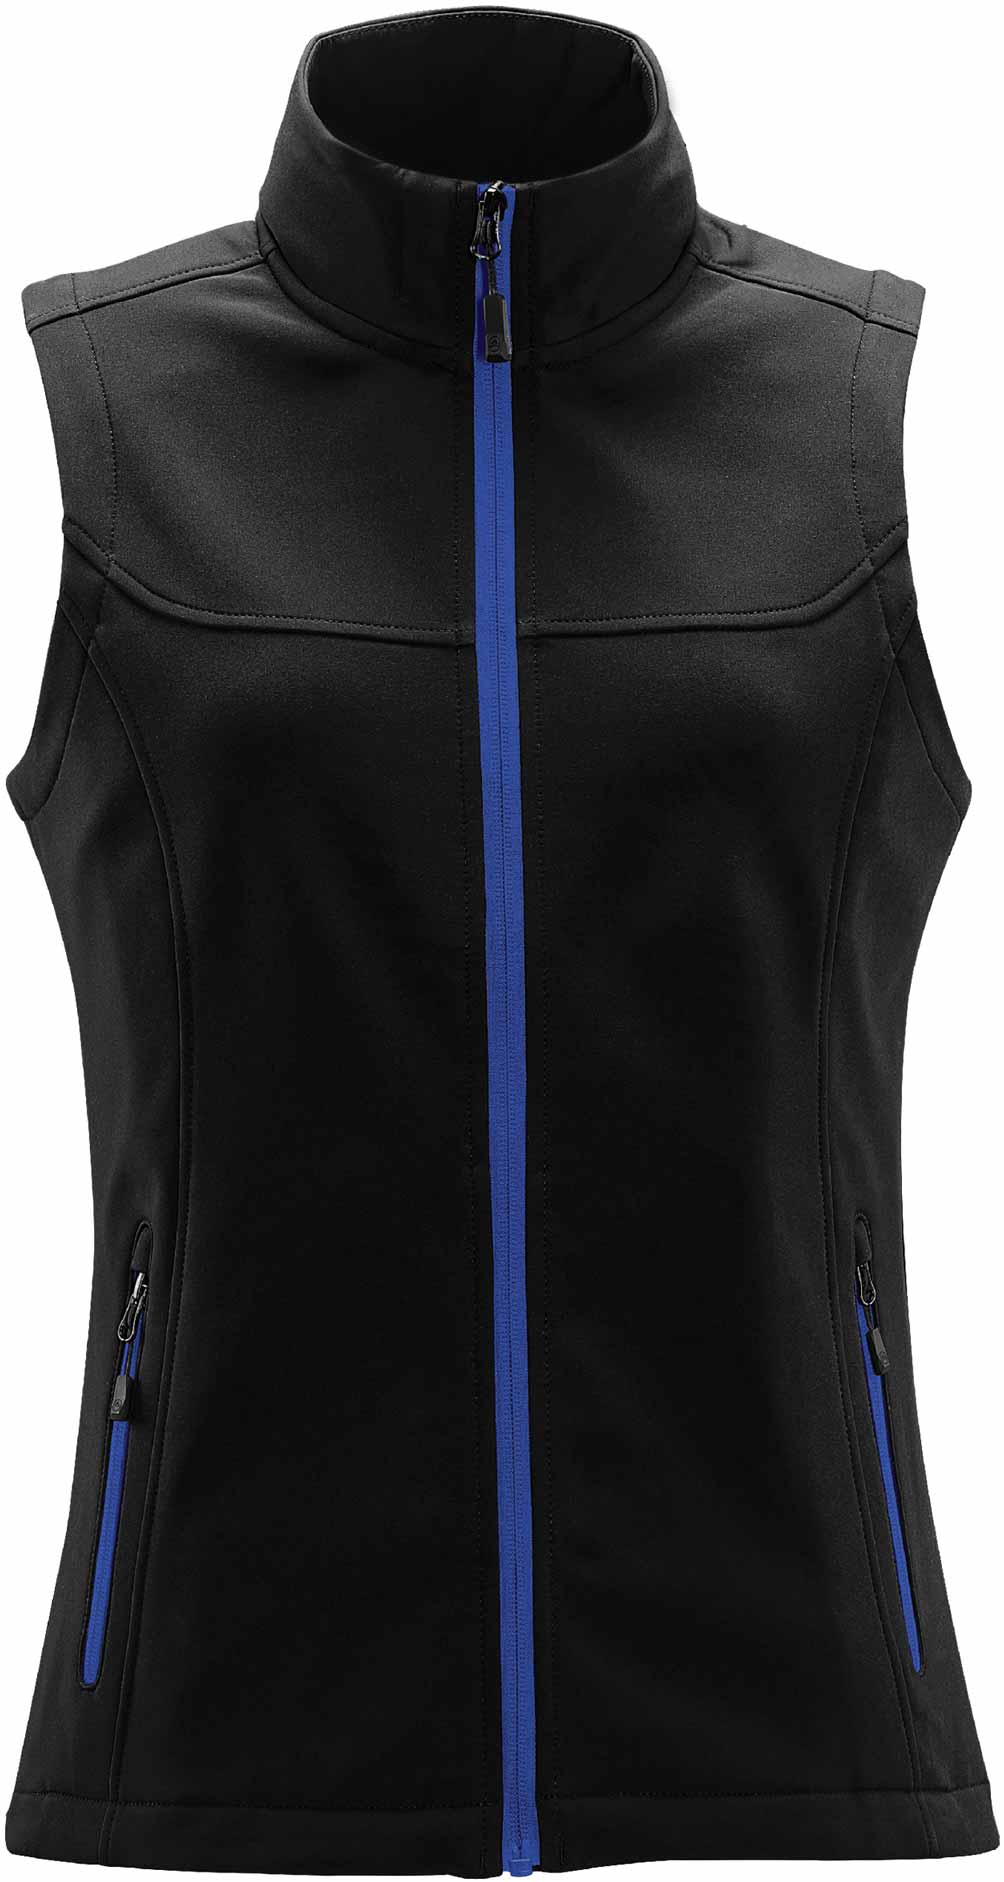 JCKSV-1W  Women's Orbiter Softshell Vest